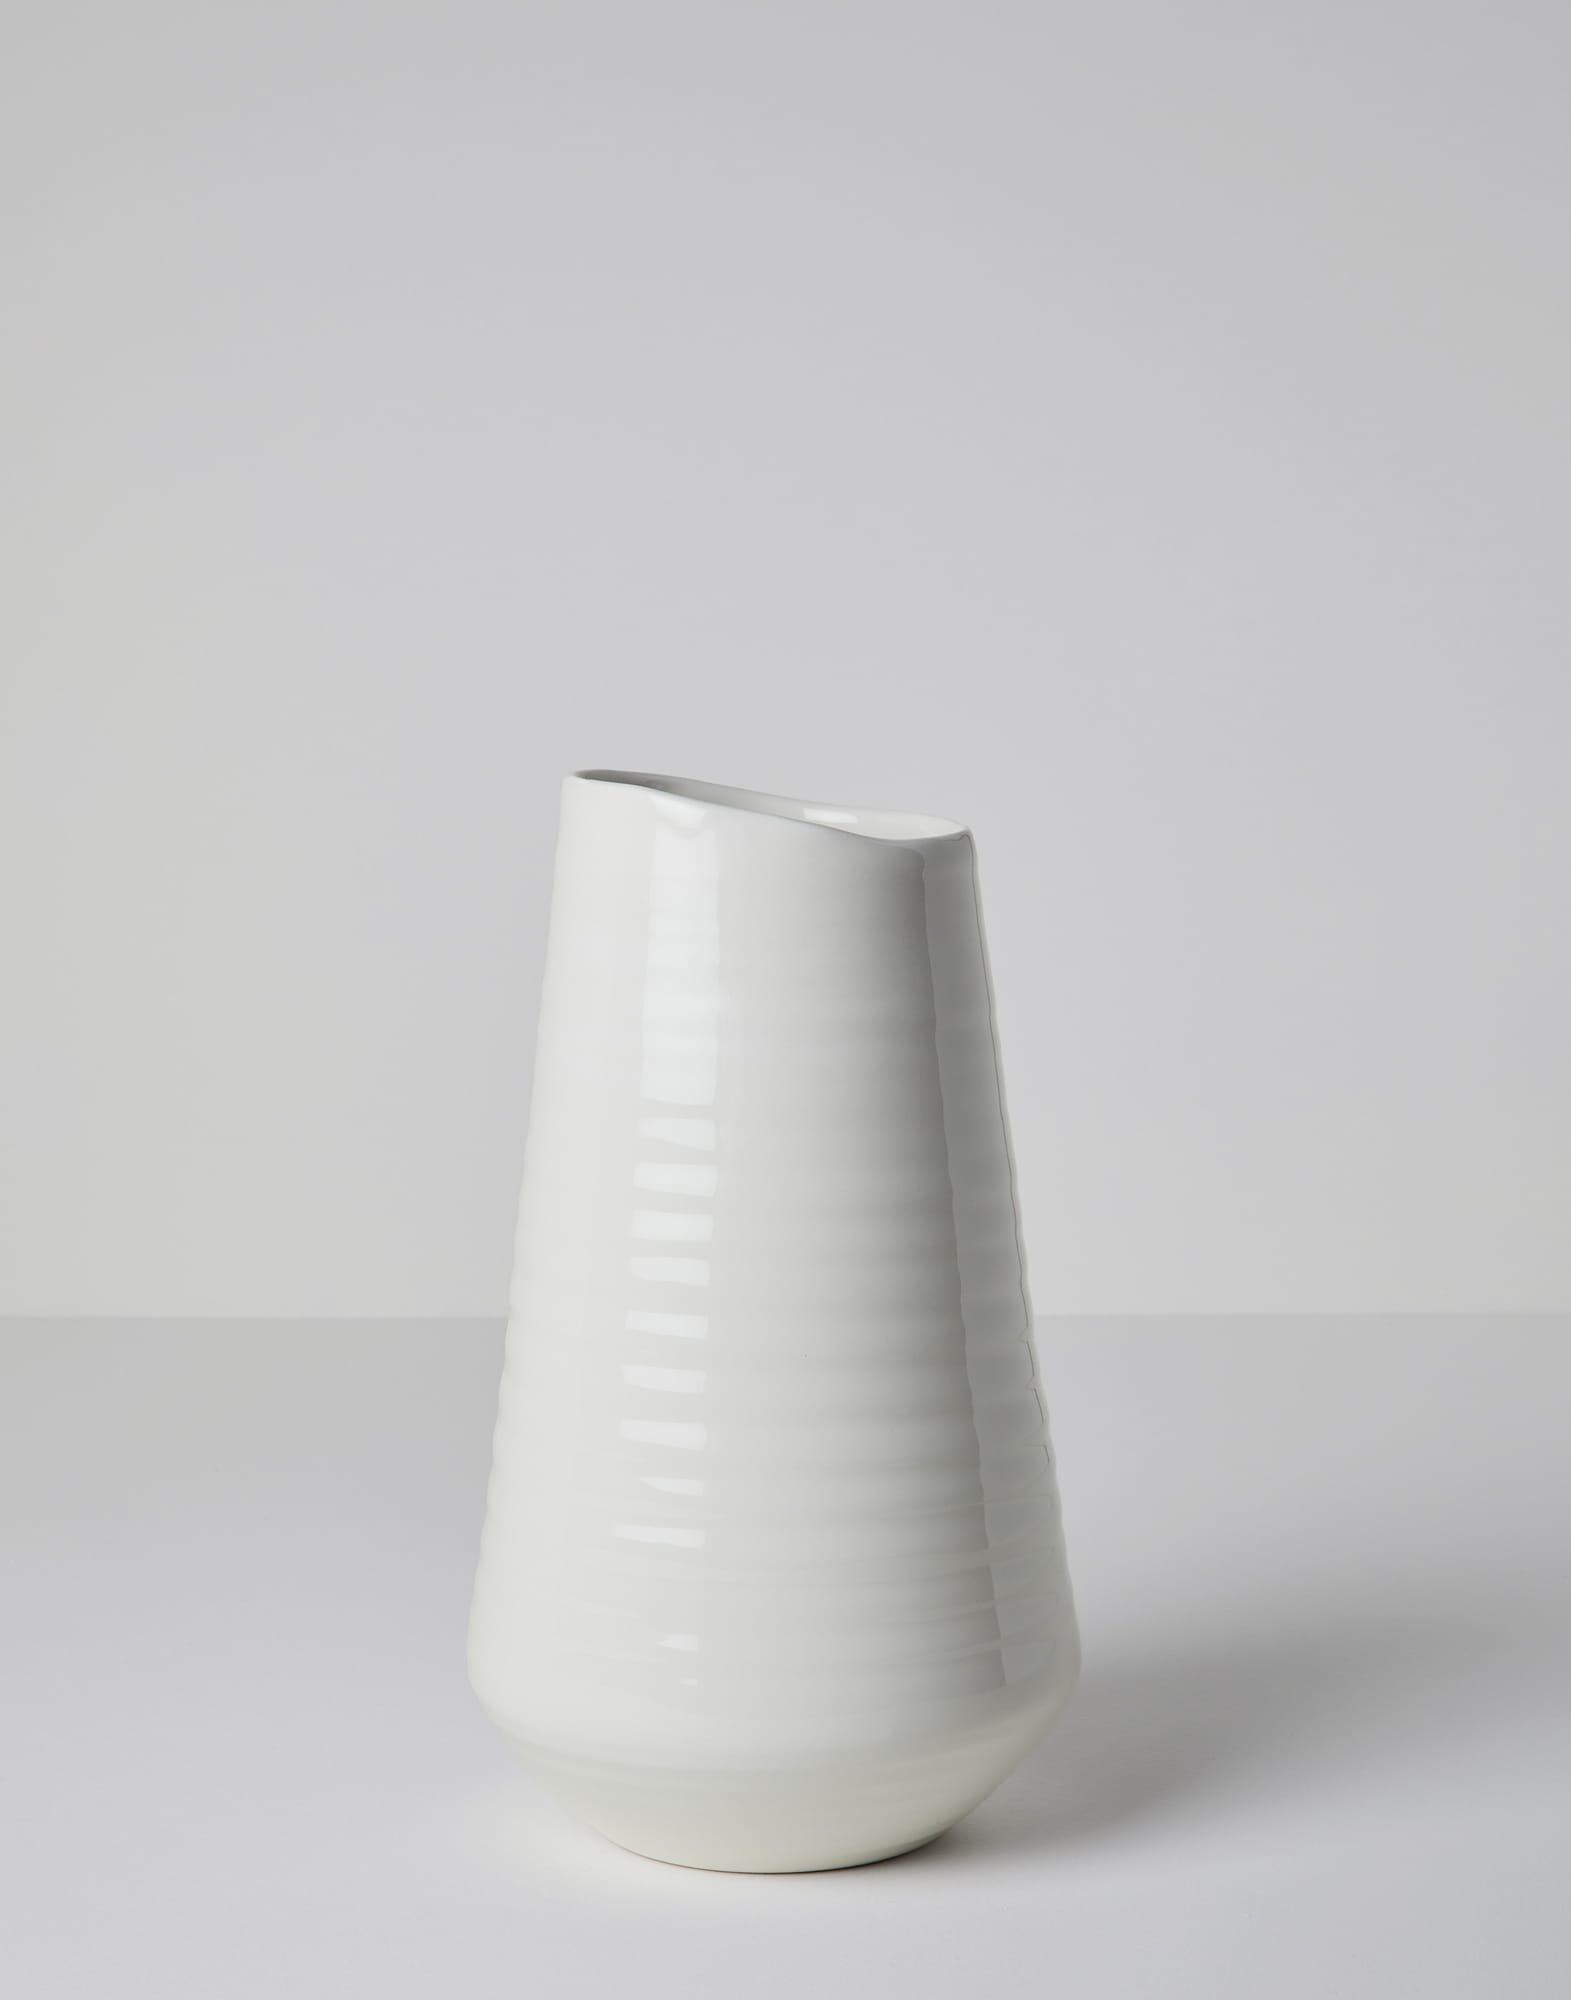 Maxi ceramic vase